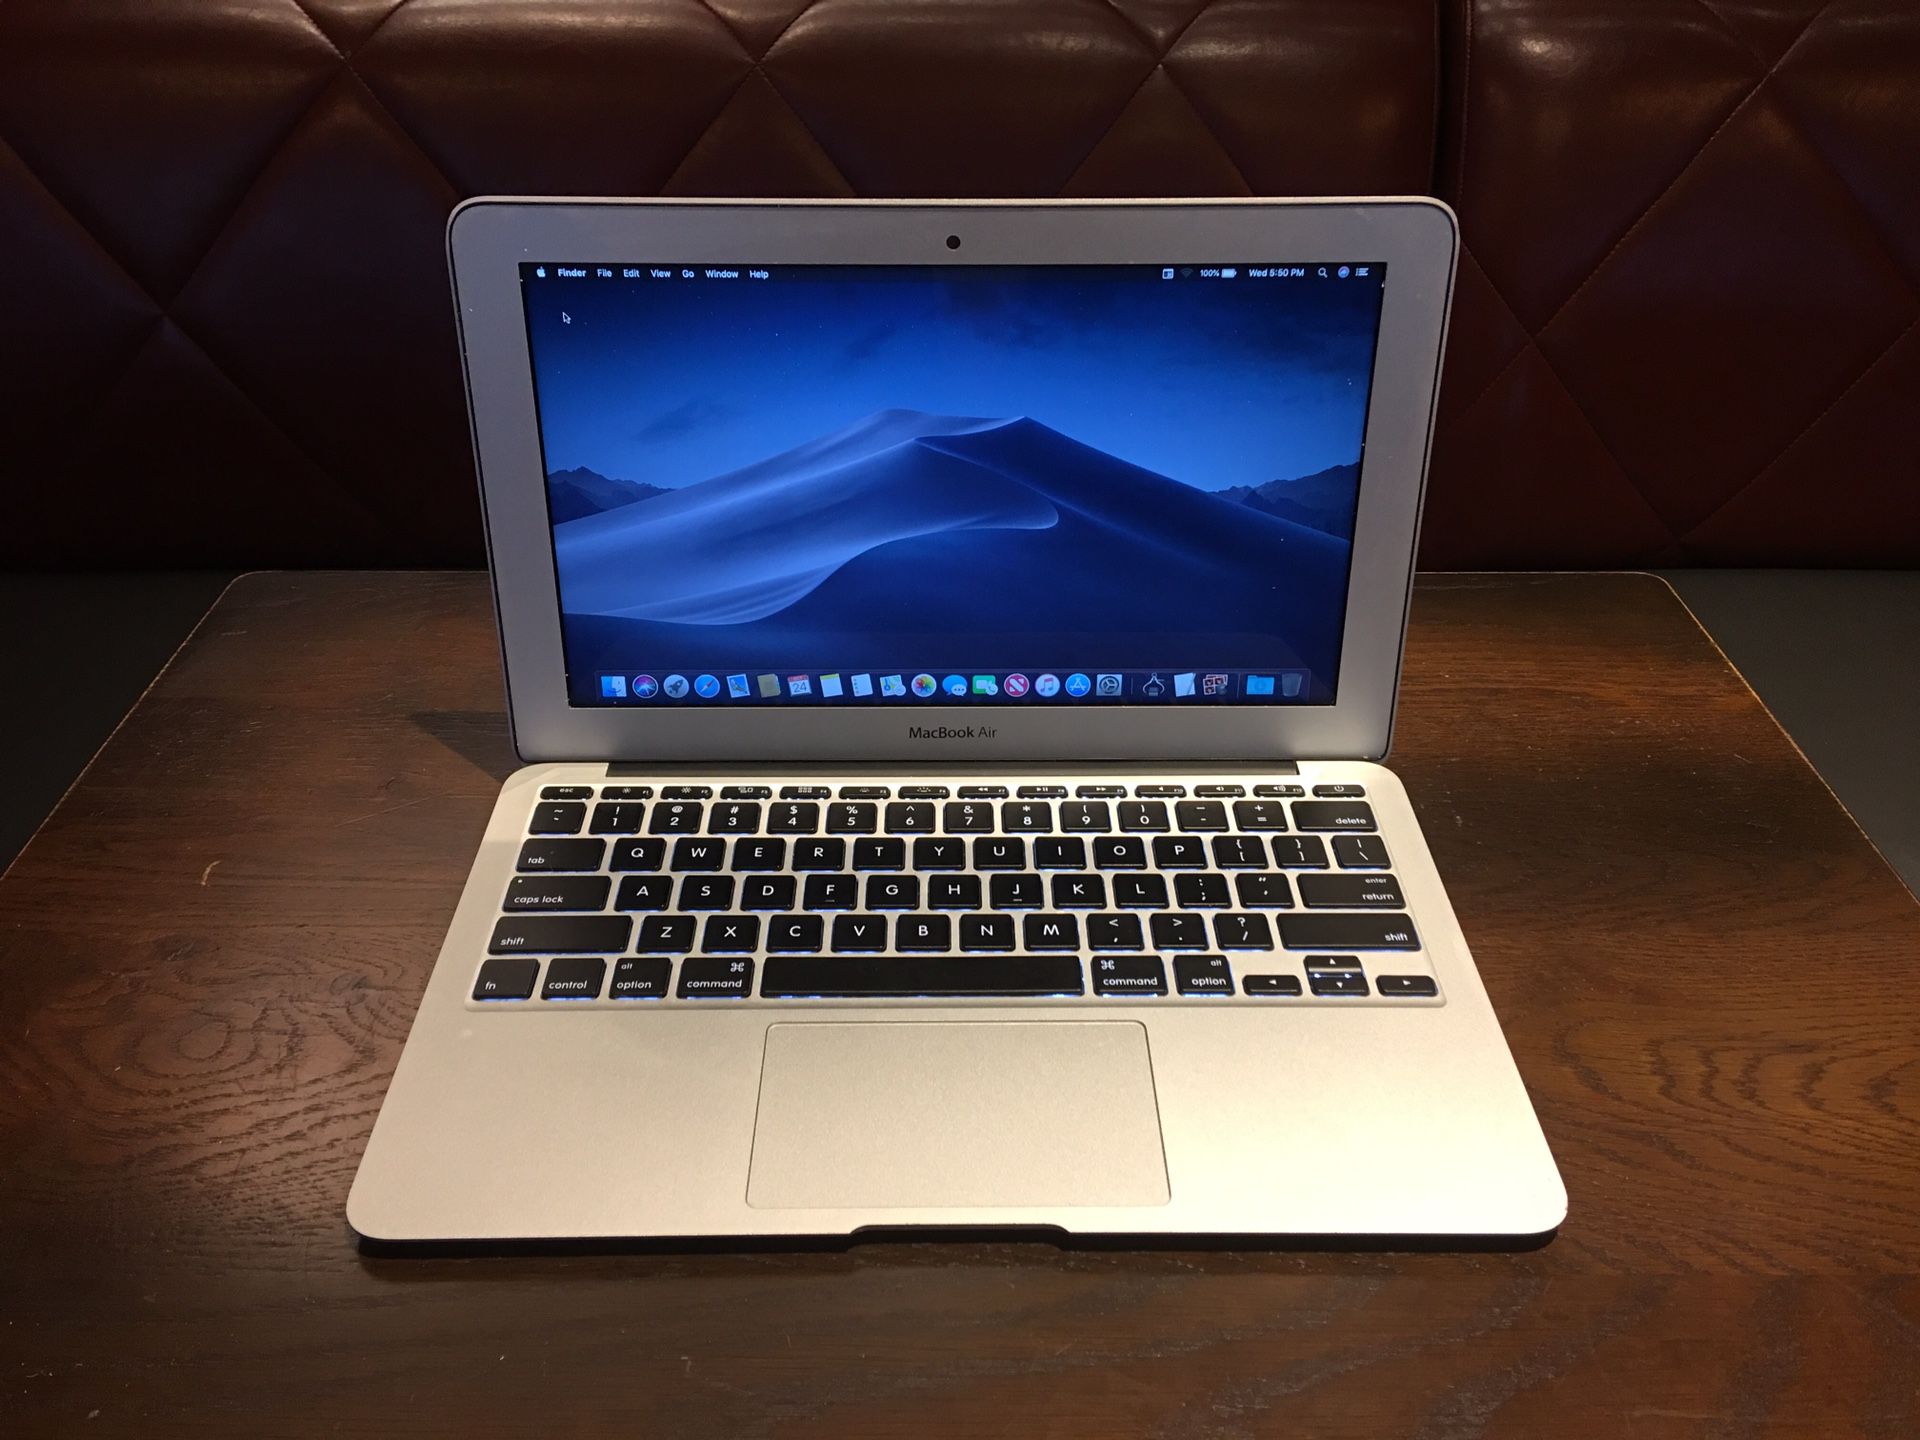 2013 11.6" Macbook Air